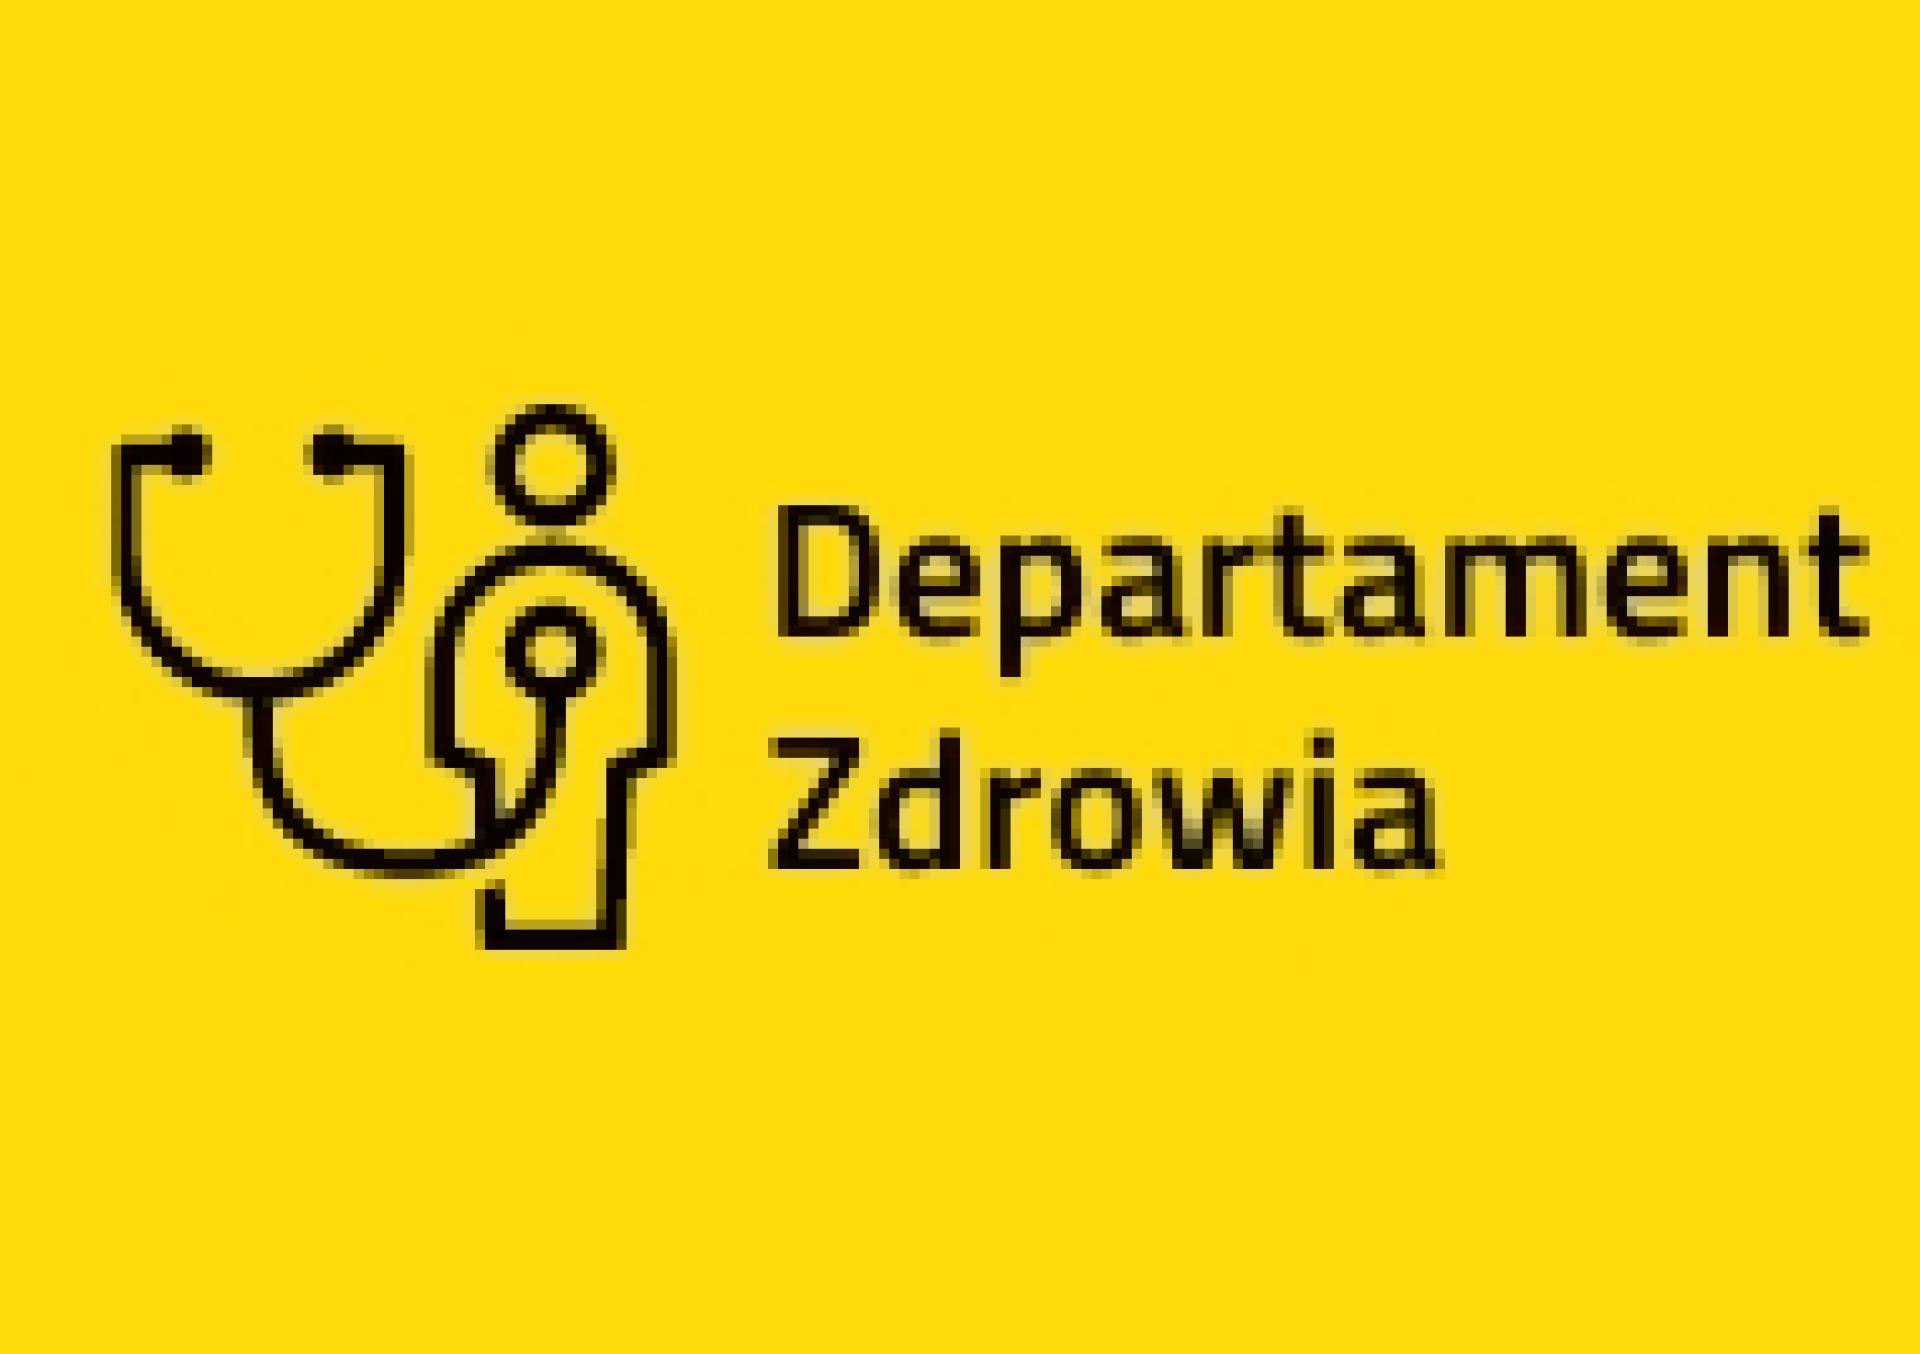 Konsultacje projektu uchwały Sejmiku zmieniającej uchwałę w sprawie nadania statutu Wielkopolskiemu Centrum Pulmonologii i Torakochirurgii  - zobacz więcej